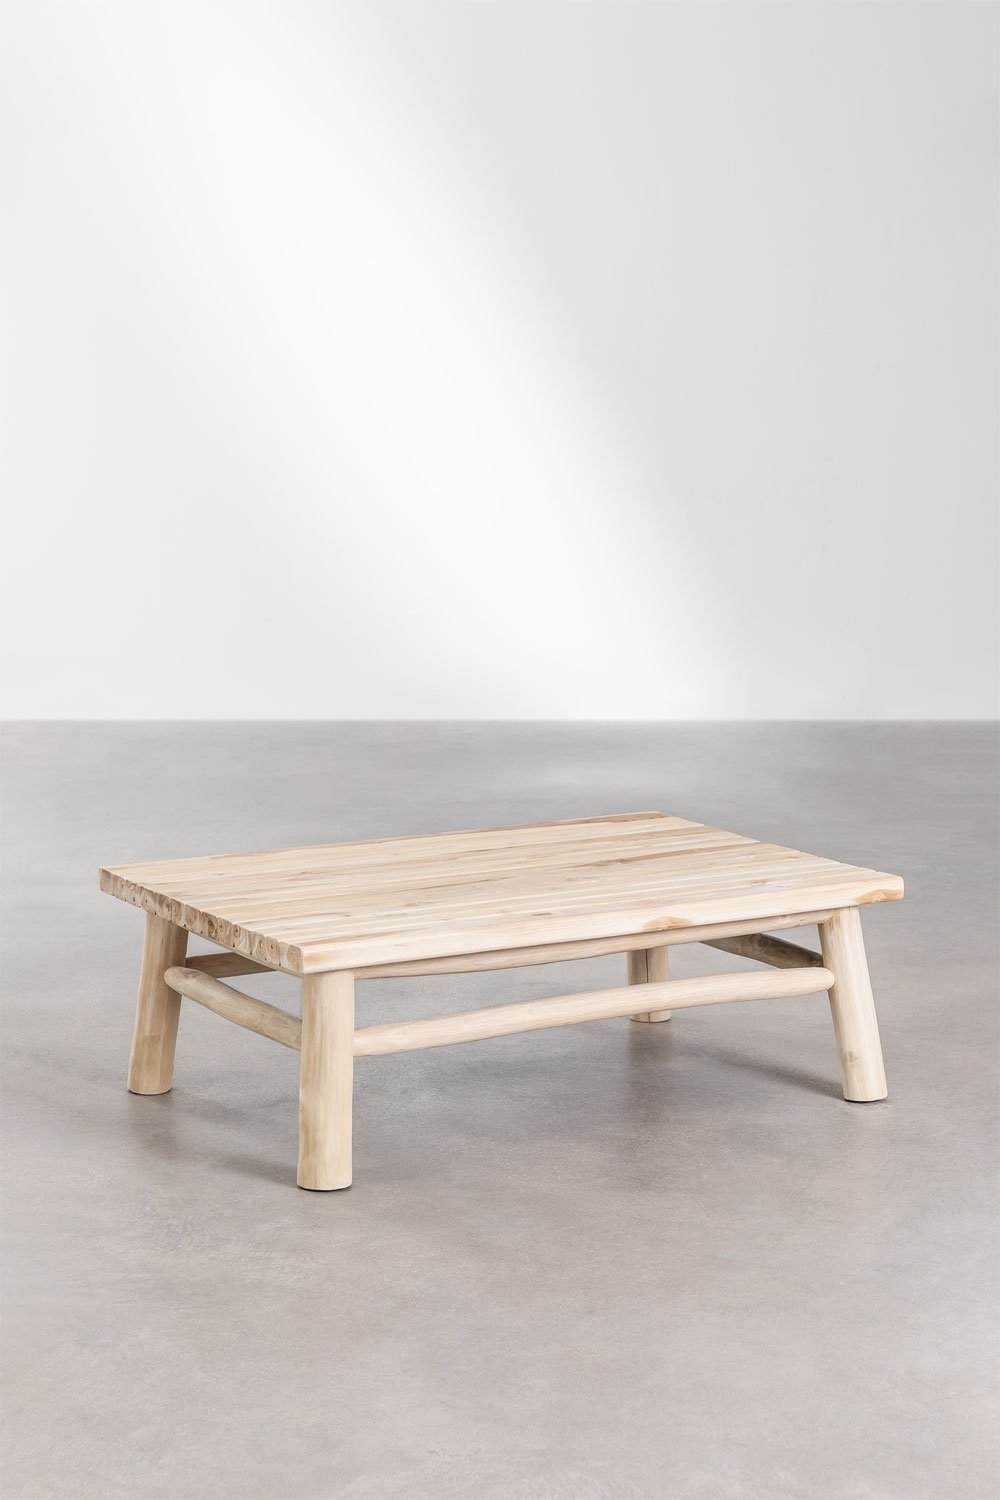 Prostokątny stolik kawowy z drewna tekowego (120x80 cm) Narel, obrazek w galerii 1